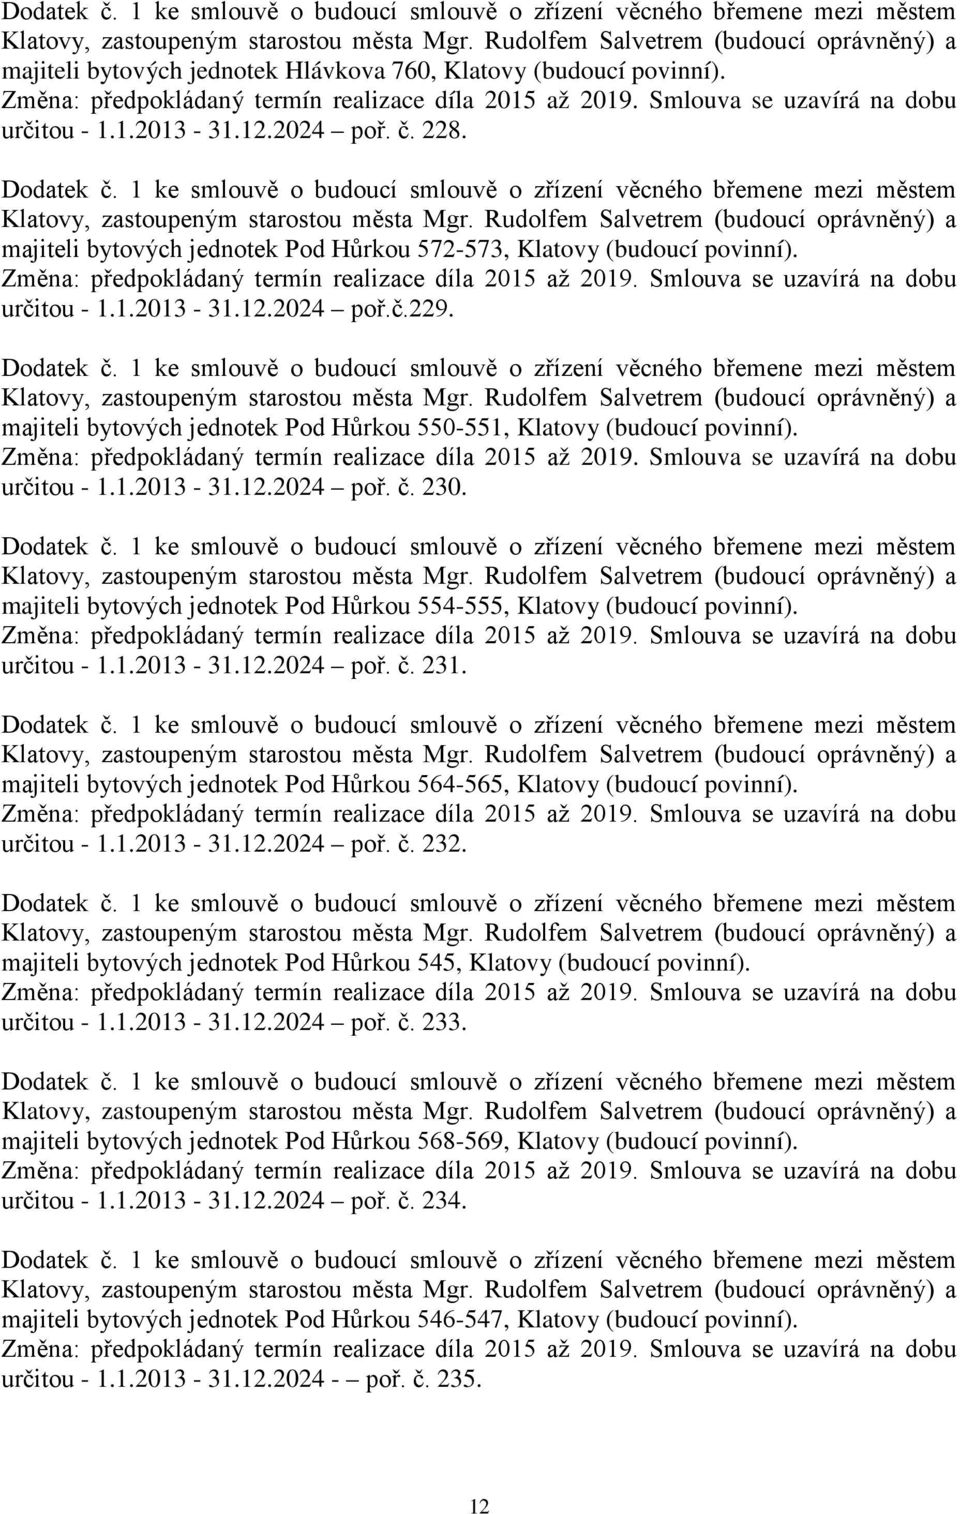 určitou - 1.1.2013-31.12.2024 poř. č. 231. majiteli bytových jednotek Pod Hůrkou 564-565, Klatovy (budoucí povinní). určitou - 1.1.2013-31.12.2024 poř. č. 232.